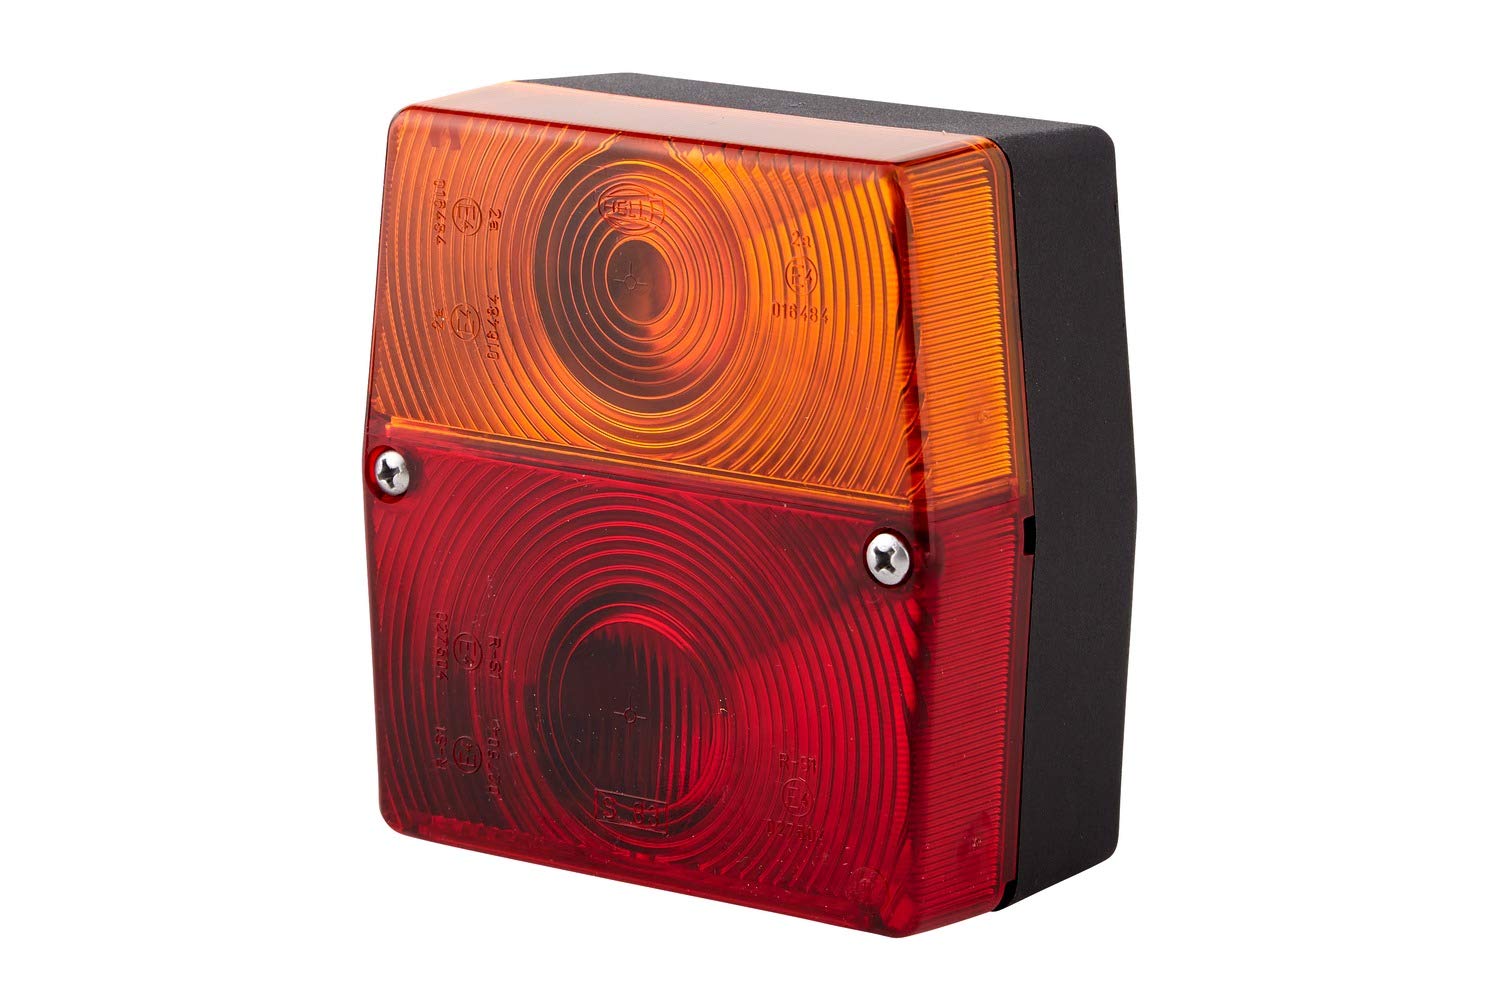 HELLA - Heckleuchte - Glühlampe - 12V - Anbau/geschraubt - Lichtscheibenfarbe: rot/gelb - Stecker: Flachstecker - links/rechts - Menge: 80 - 2SE 998 530-077 von Hella